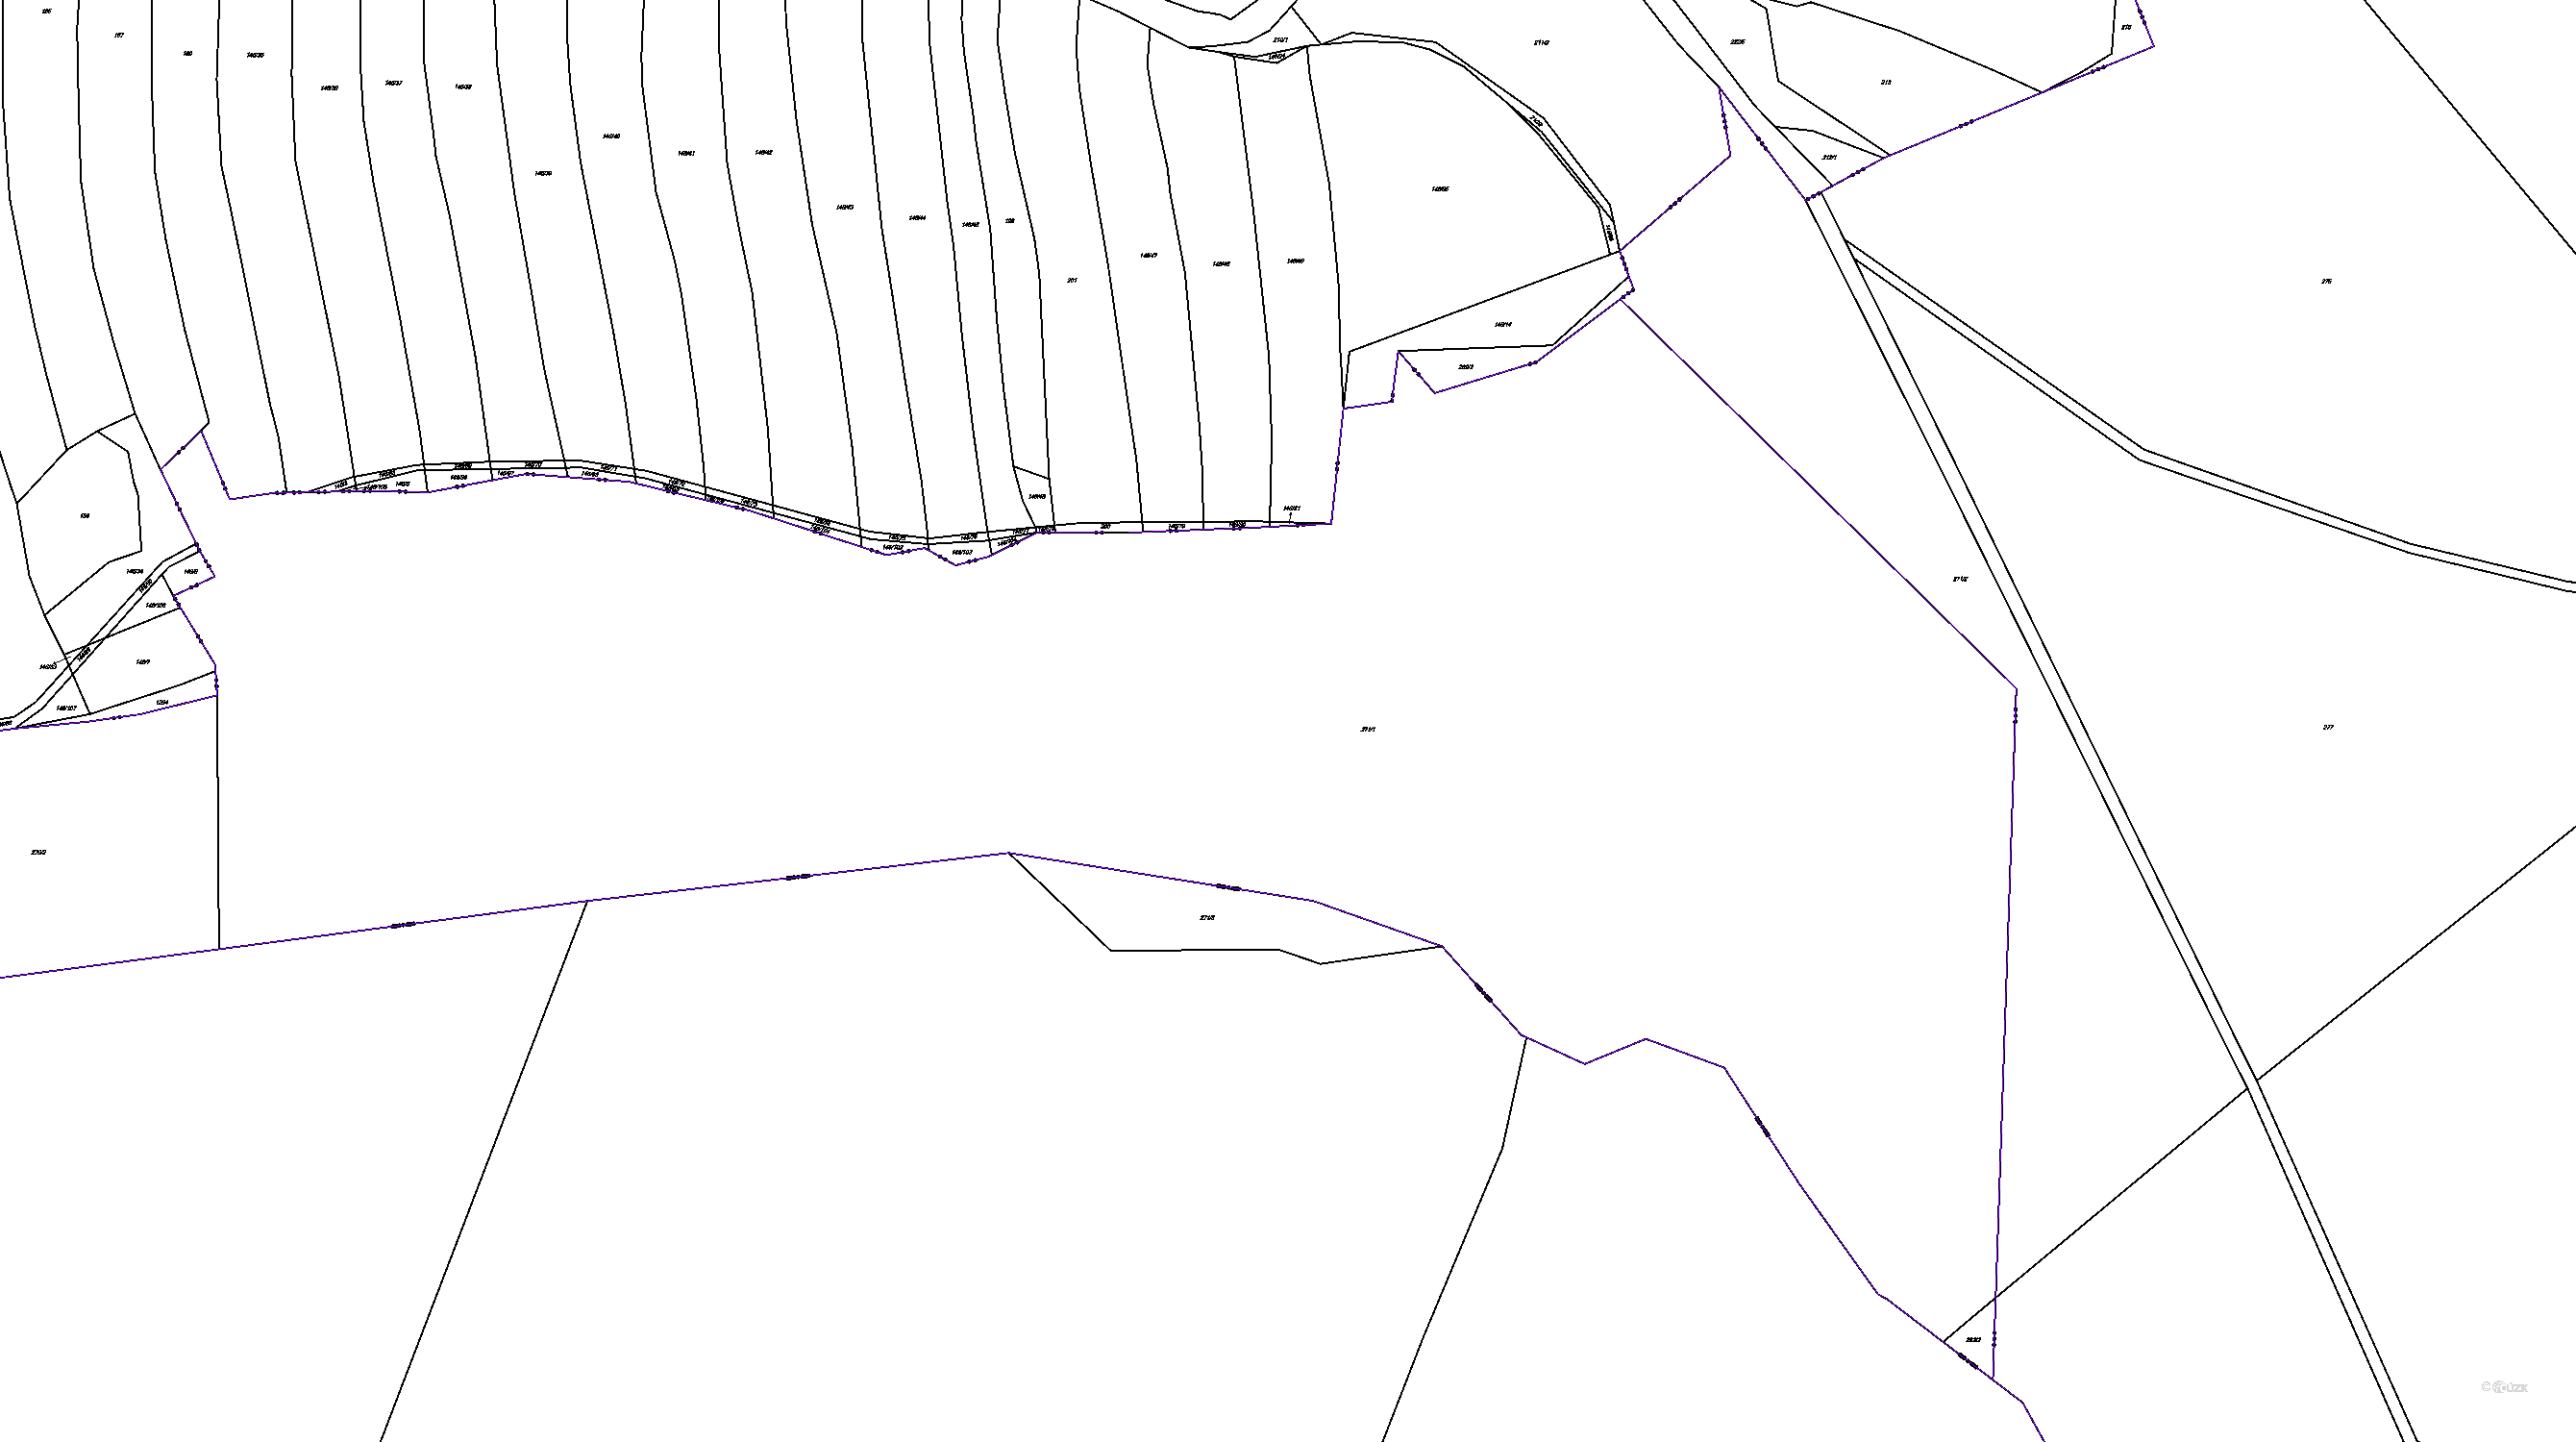 Katastrální mapa pozemků a čísla parcel Trokavec v Brdech